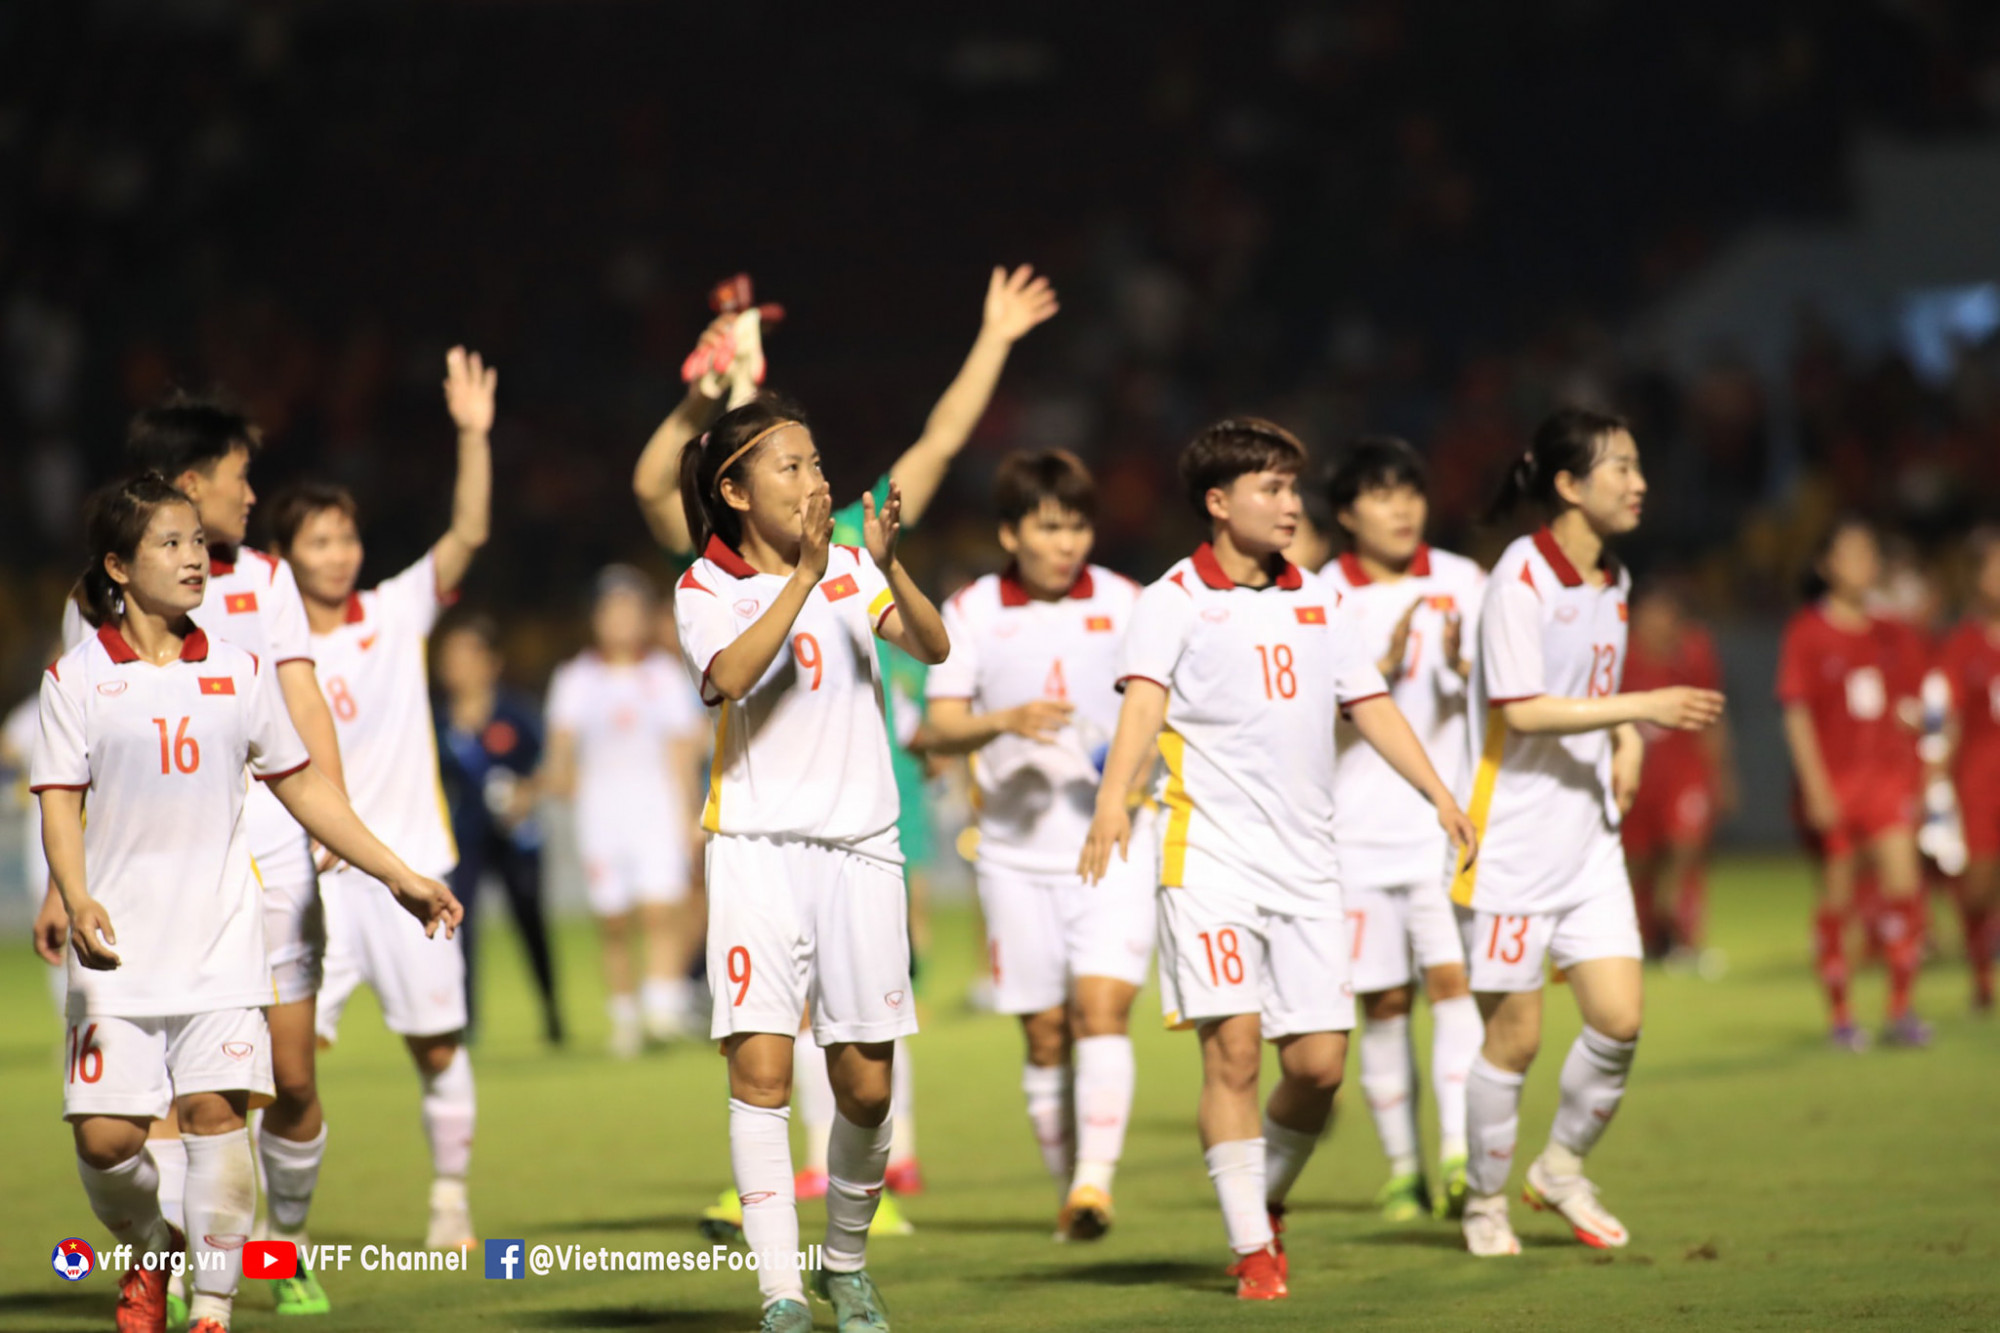 Vượt qua hai trận đấu bảng, tuyển nữ Việt Nam bước vào bán kết SEA Games 31 với ngôi đầu bảng. Đối thủ bán kết của các cô gái Việt Nam là Myanmar.